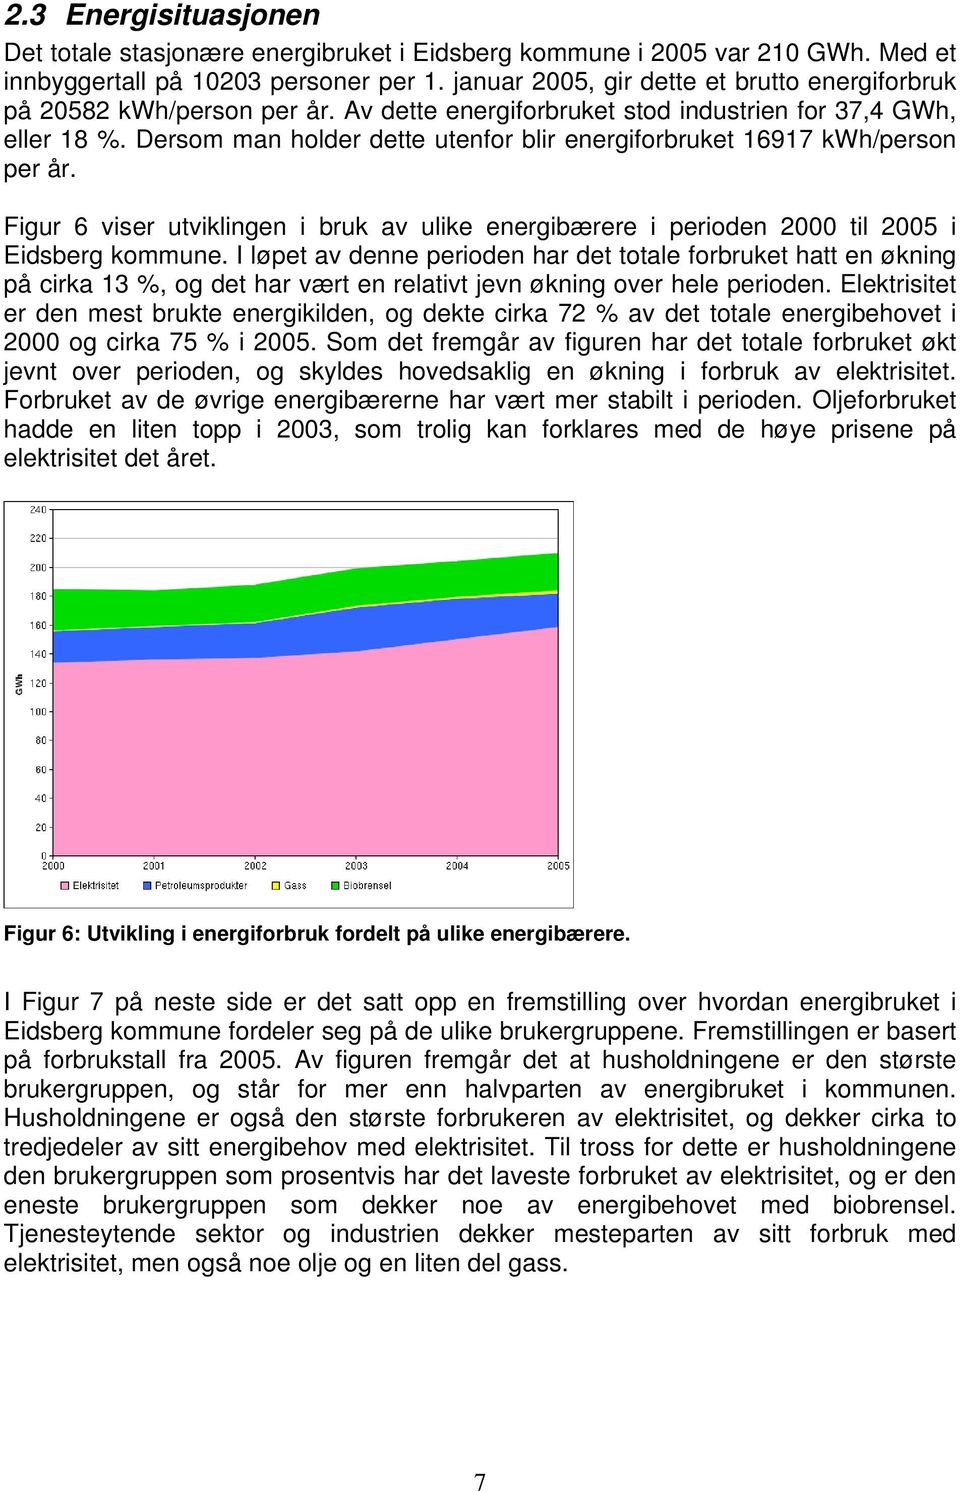 Dersom man holder dette utenfor blir energiforbruket 16917 kwh/person per år. Figur 6 viser utviklingen i bruk av ulike energibærere i perioden 2000 til 2005 i Eidsberg kommune.